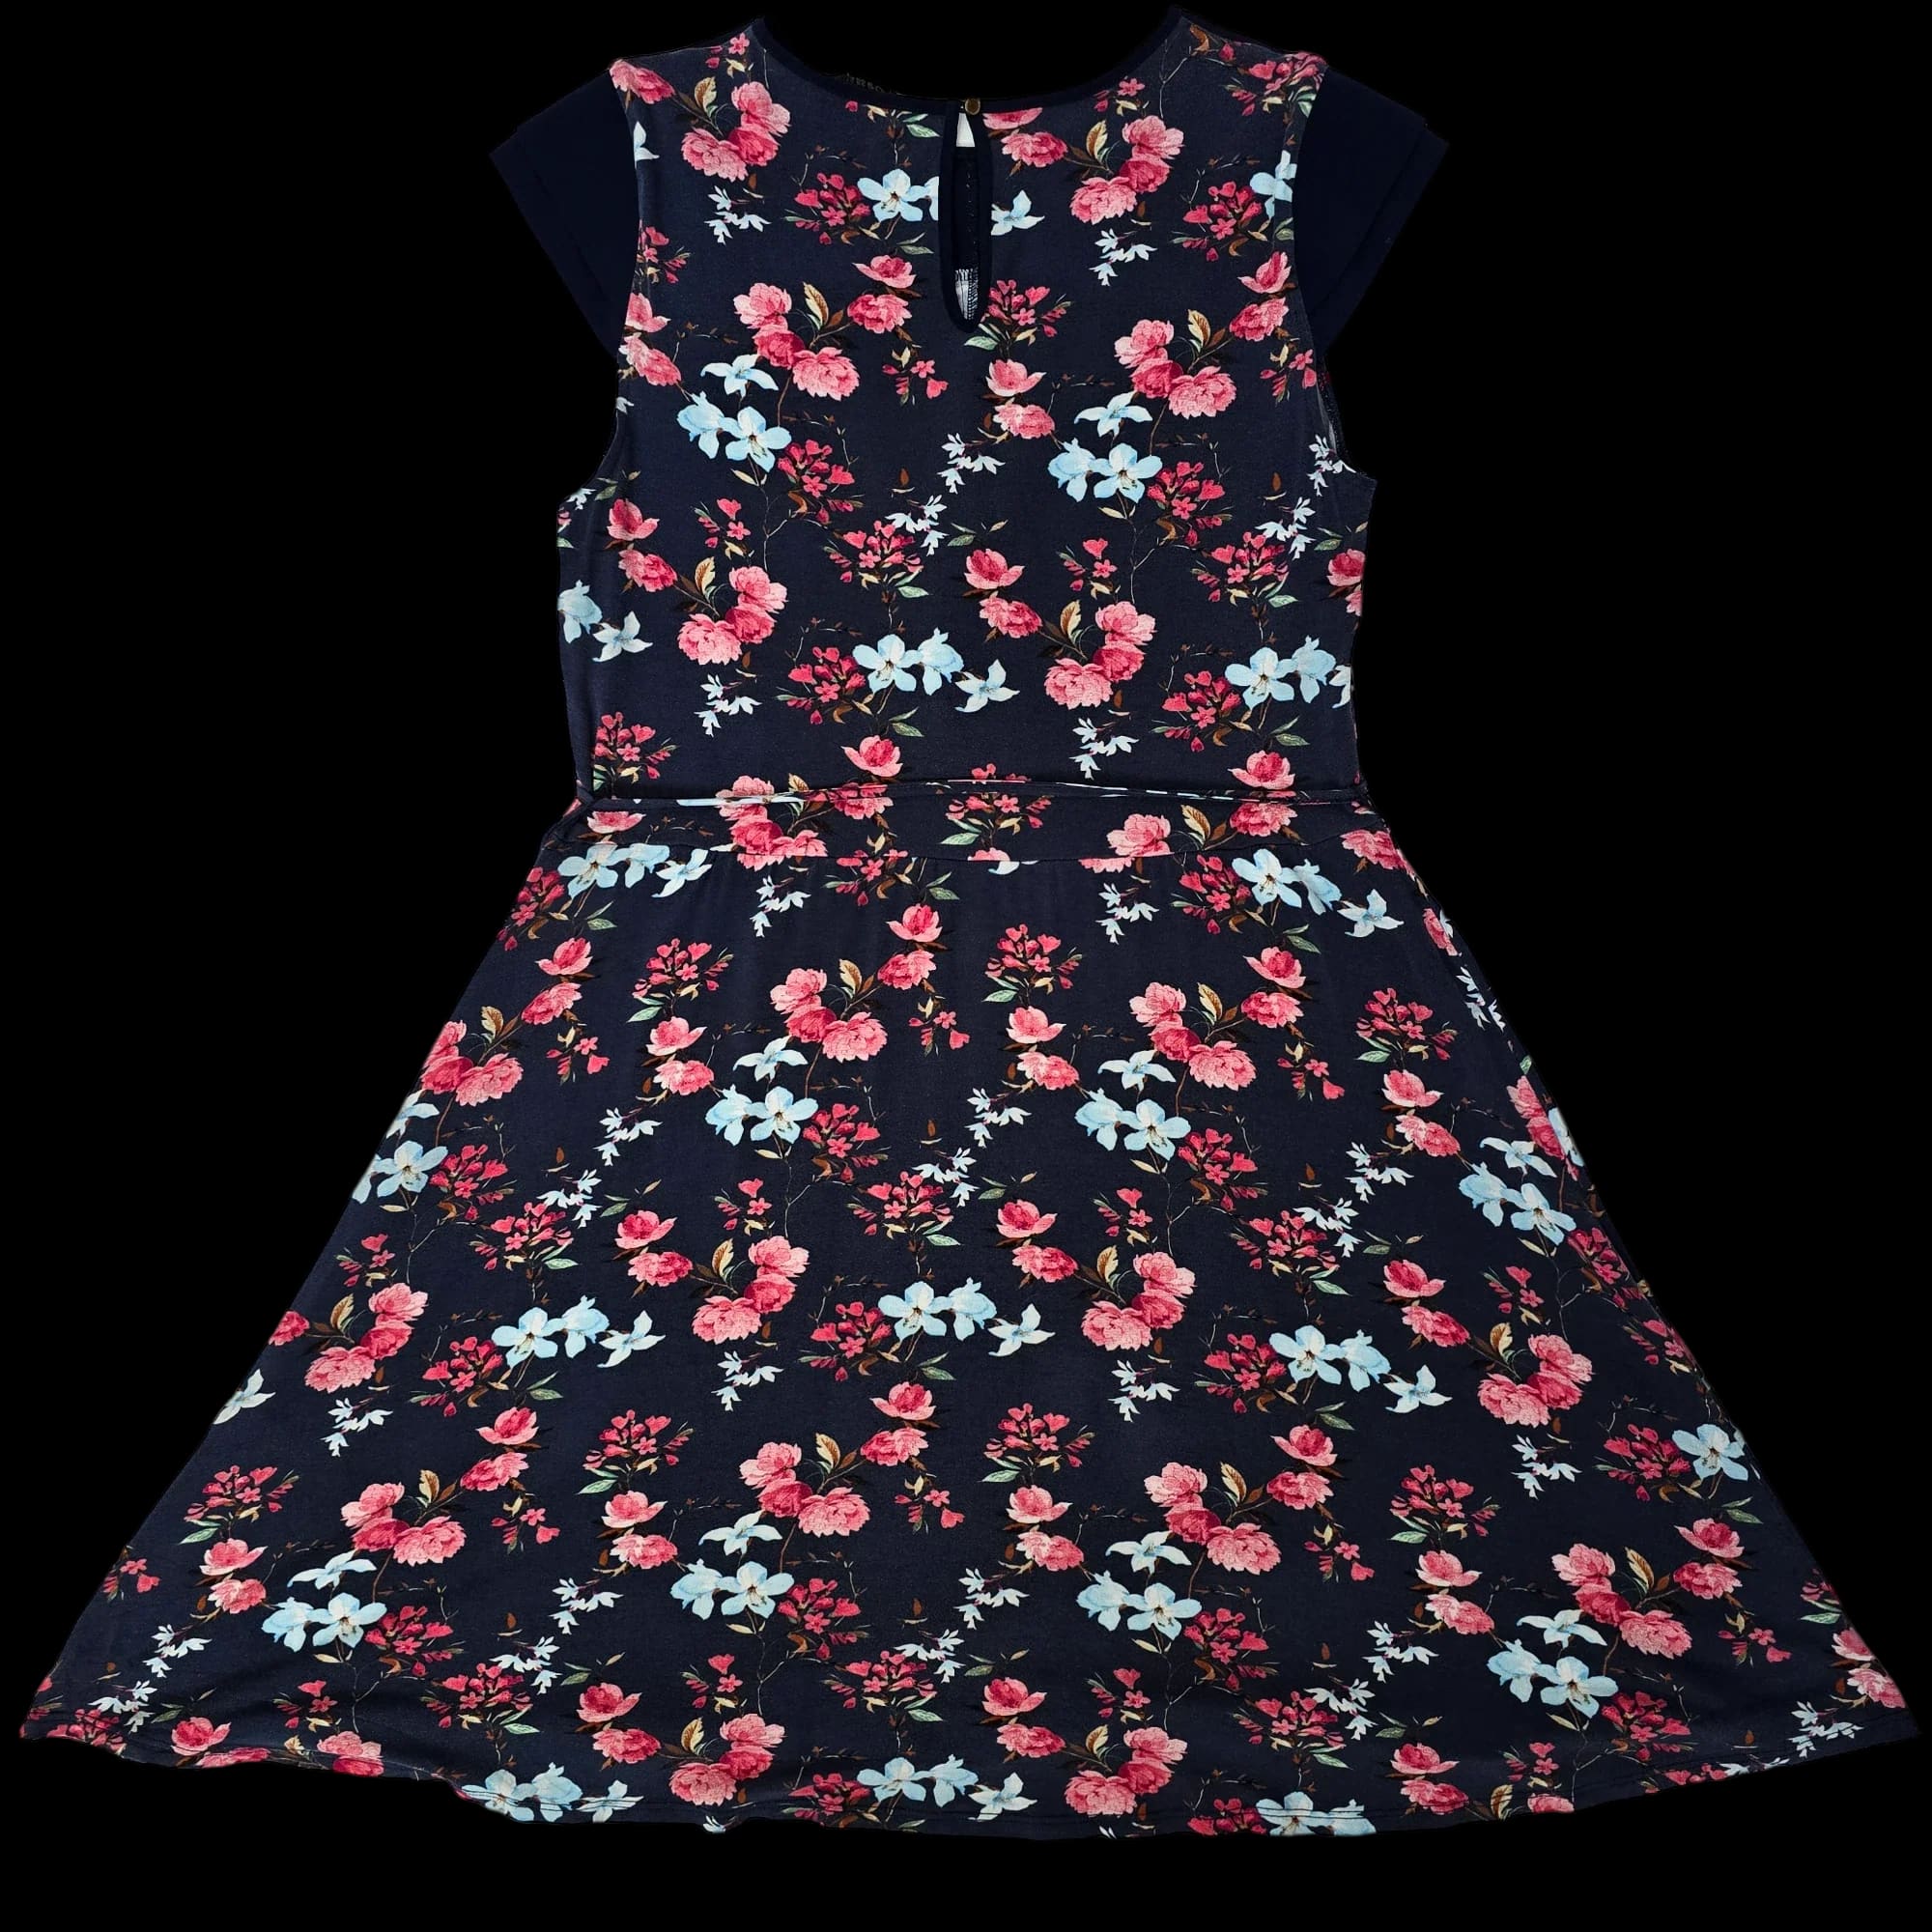 Women’s Oasis Floral Shift Dress UK Large - Dresses - 5